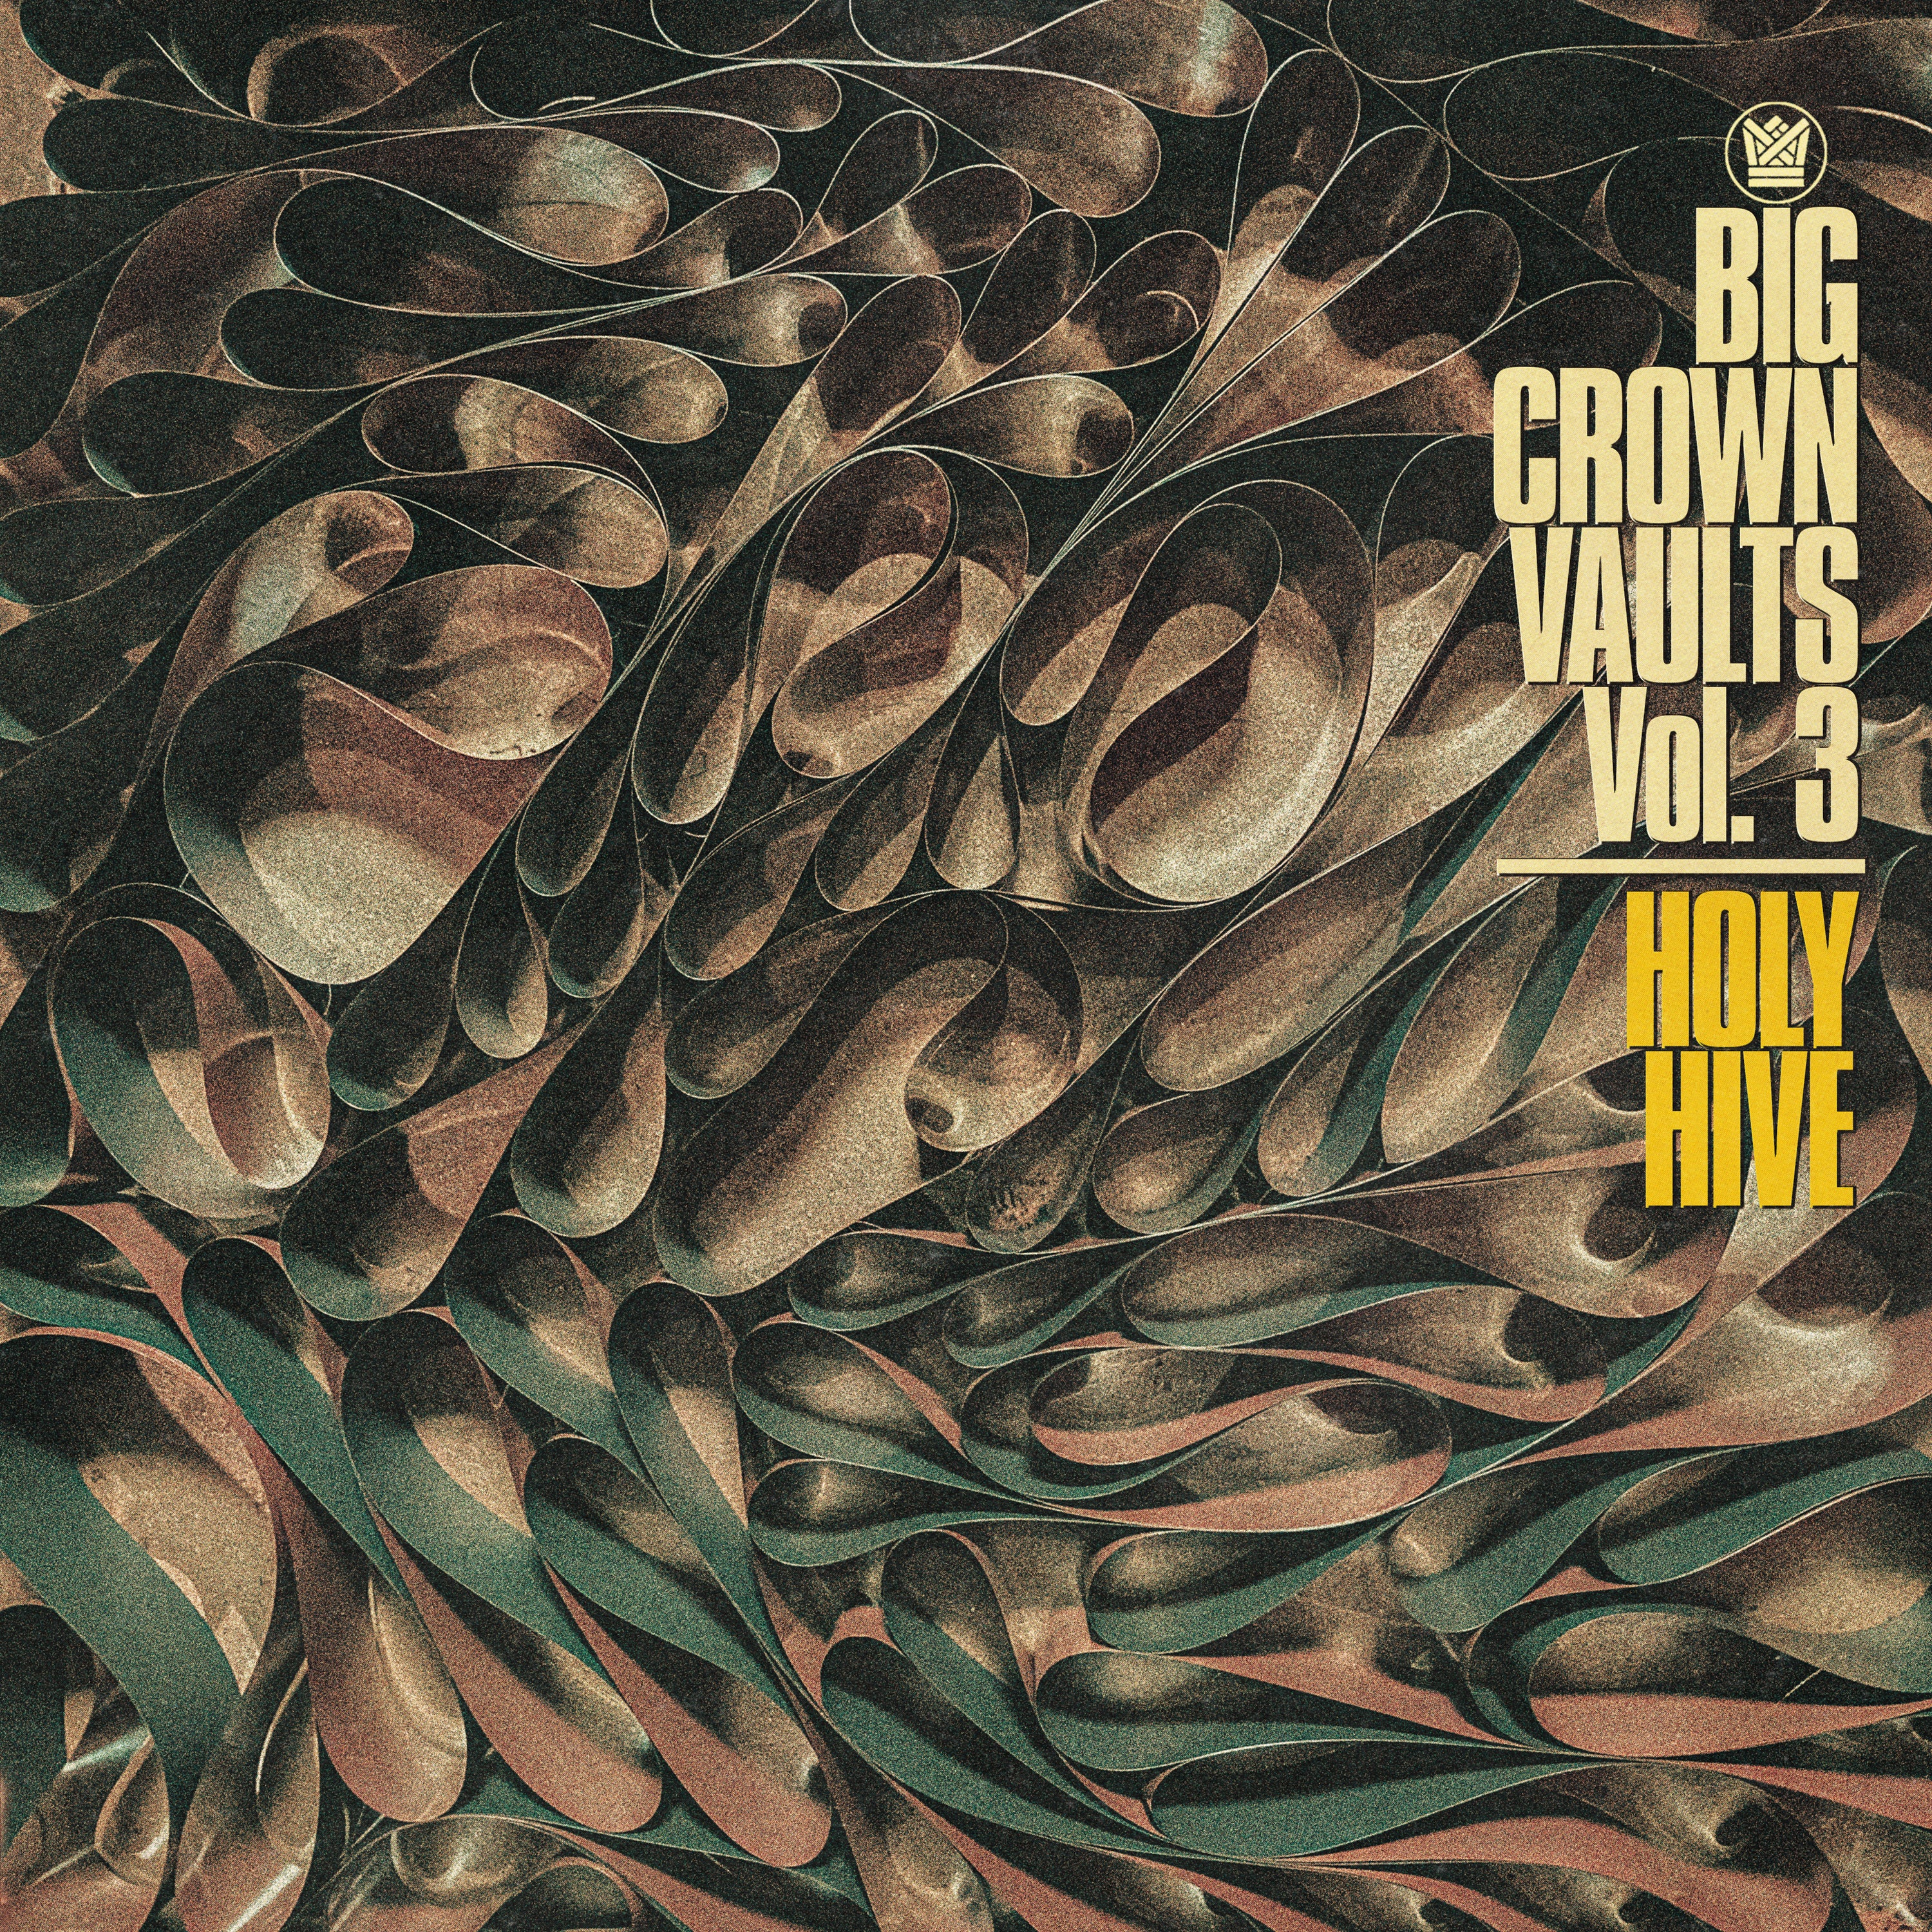 Holy Hive - Big Crown Vaults Vol. 3 [Tape Gray Vinyl]